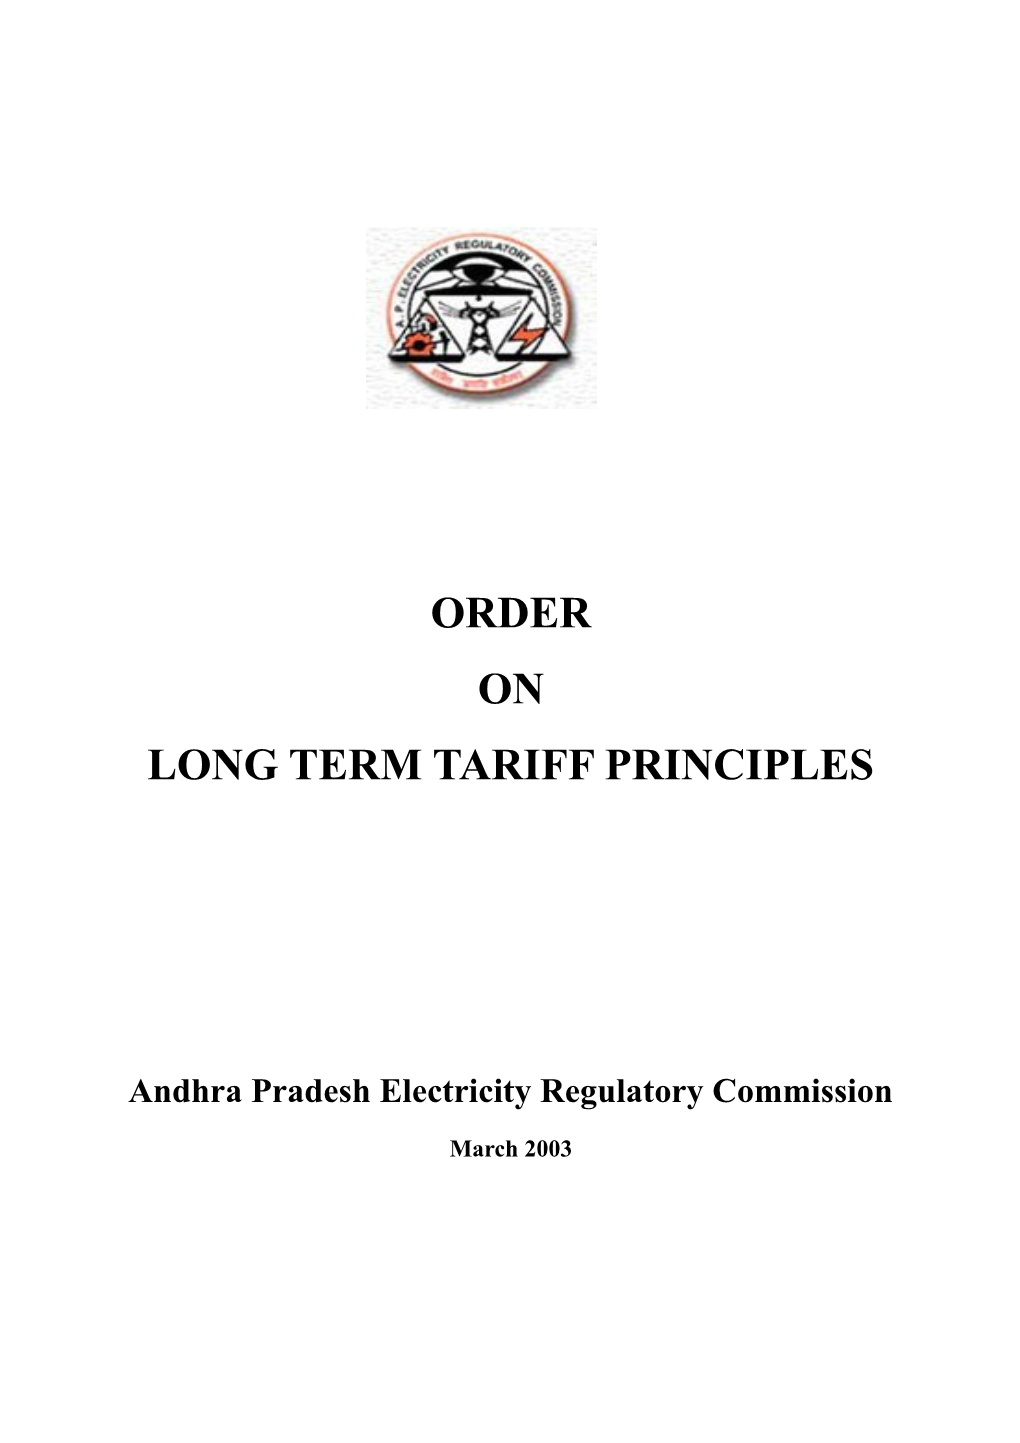 Long Term Tariff Principlesorder